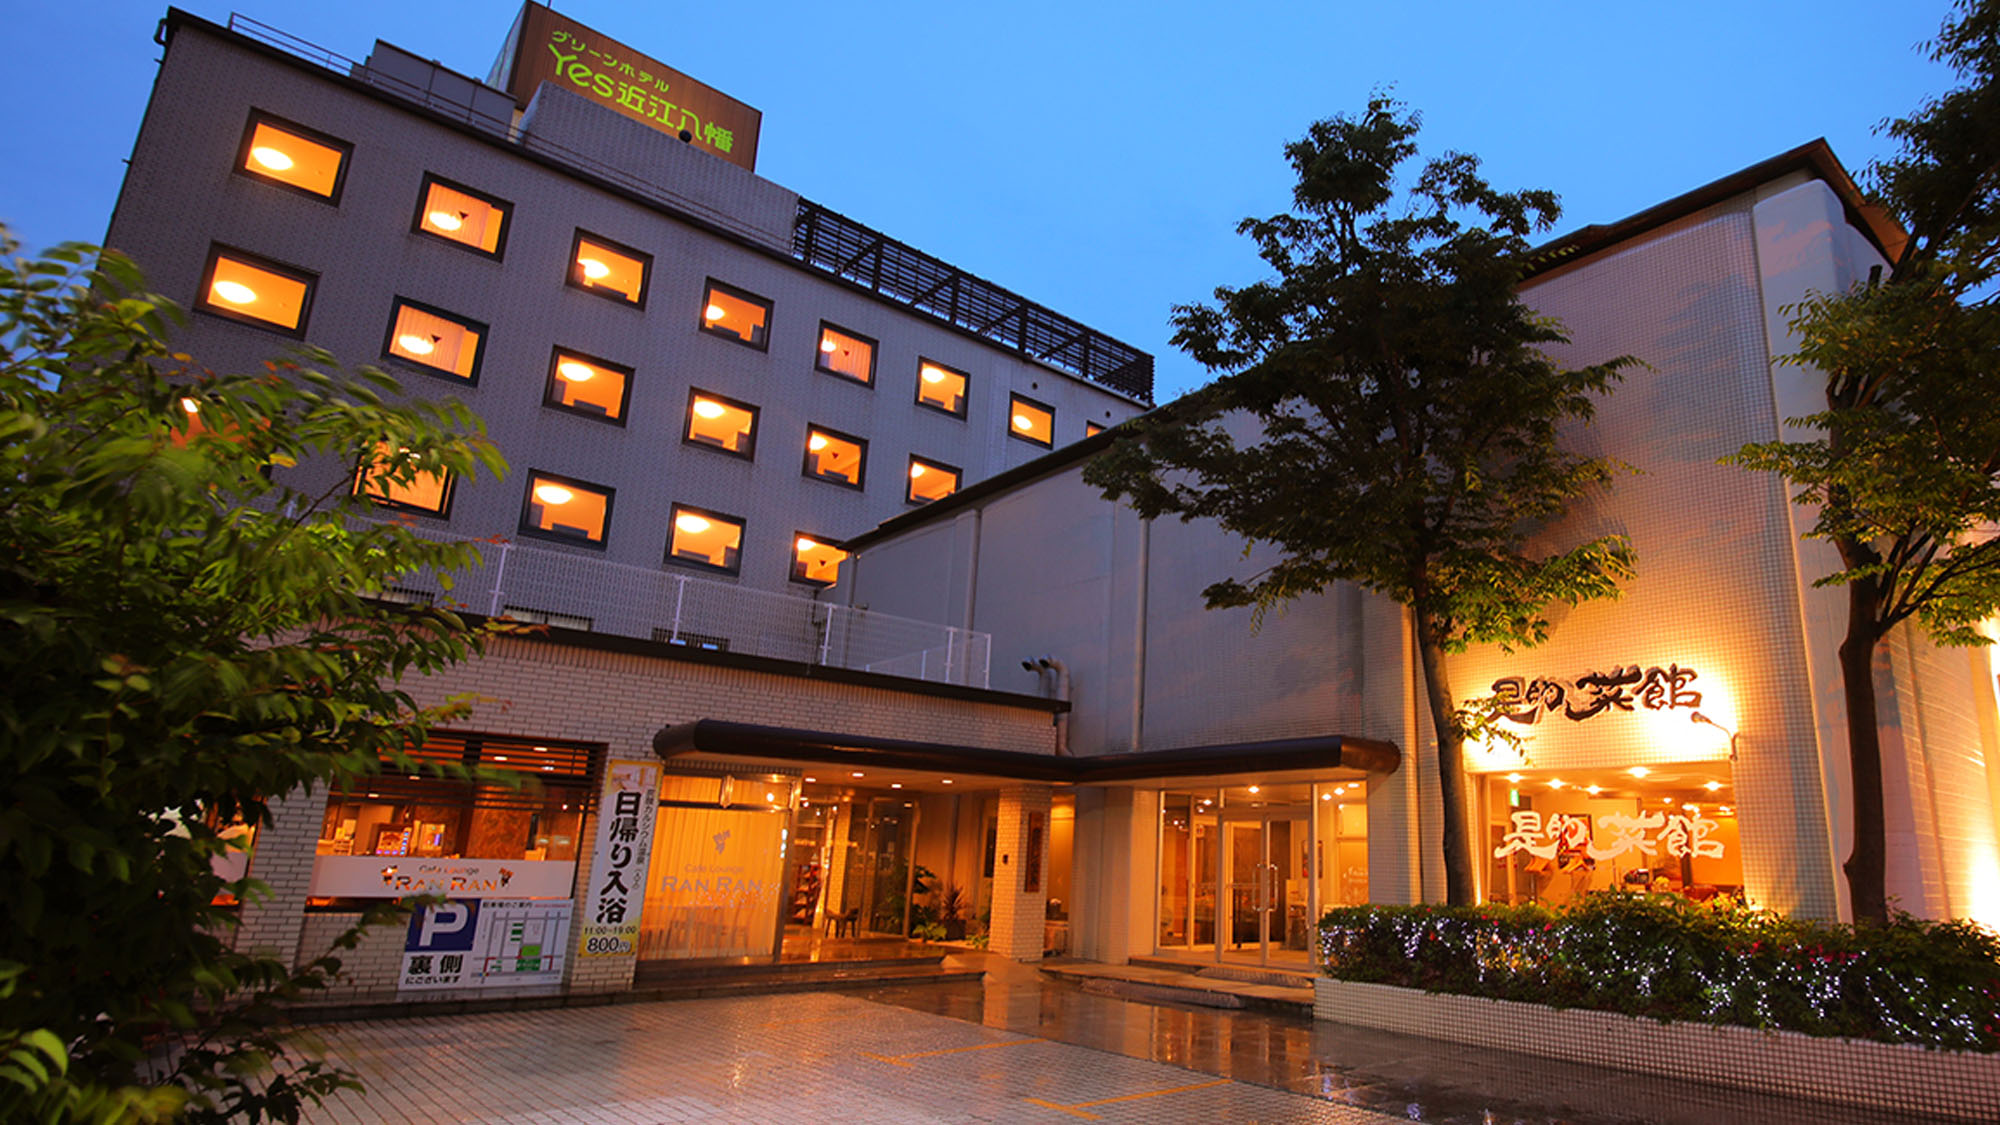 滋賀県 泊まってよかった 新婚 カップルにおすすめの旅館 ホテル予約 Biglobe旅行